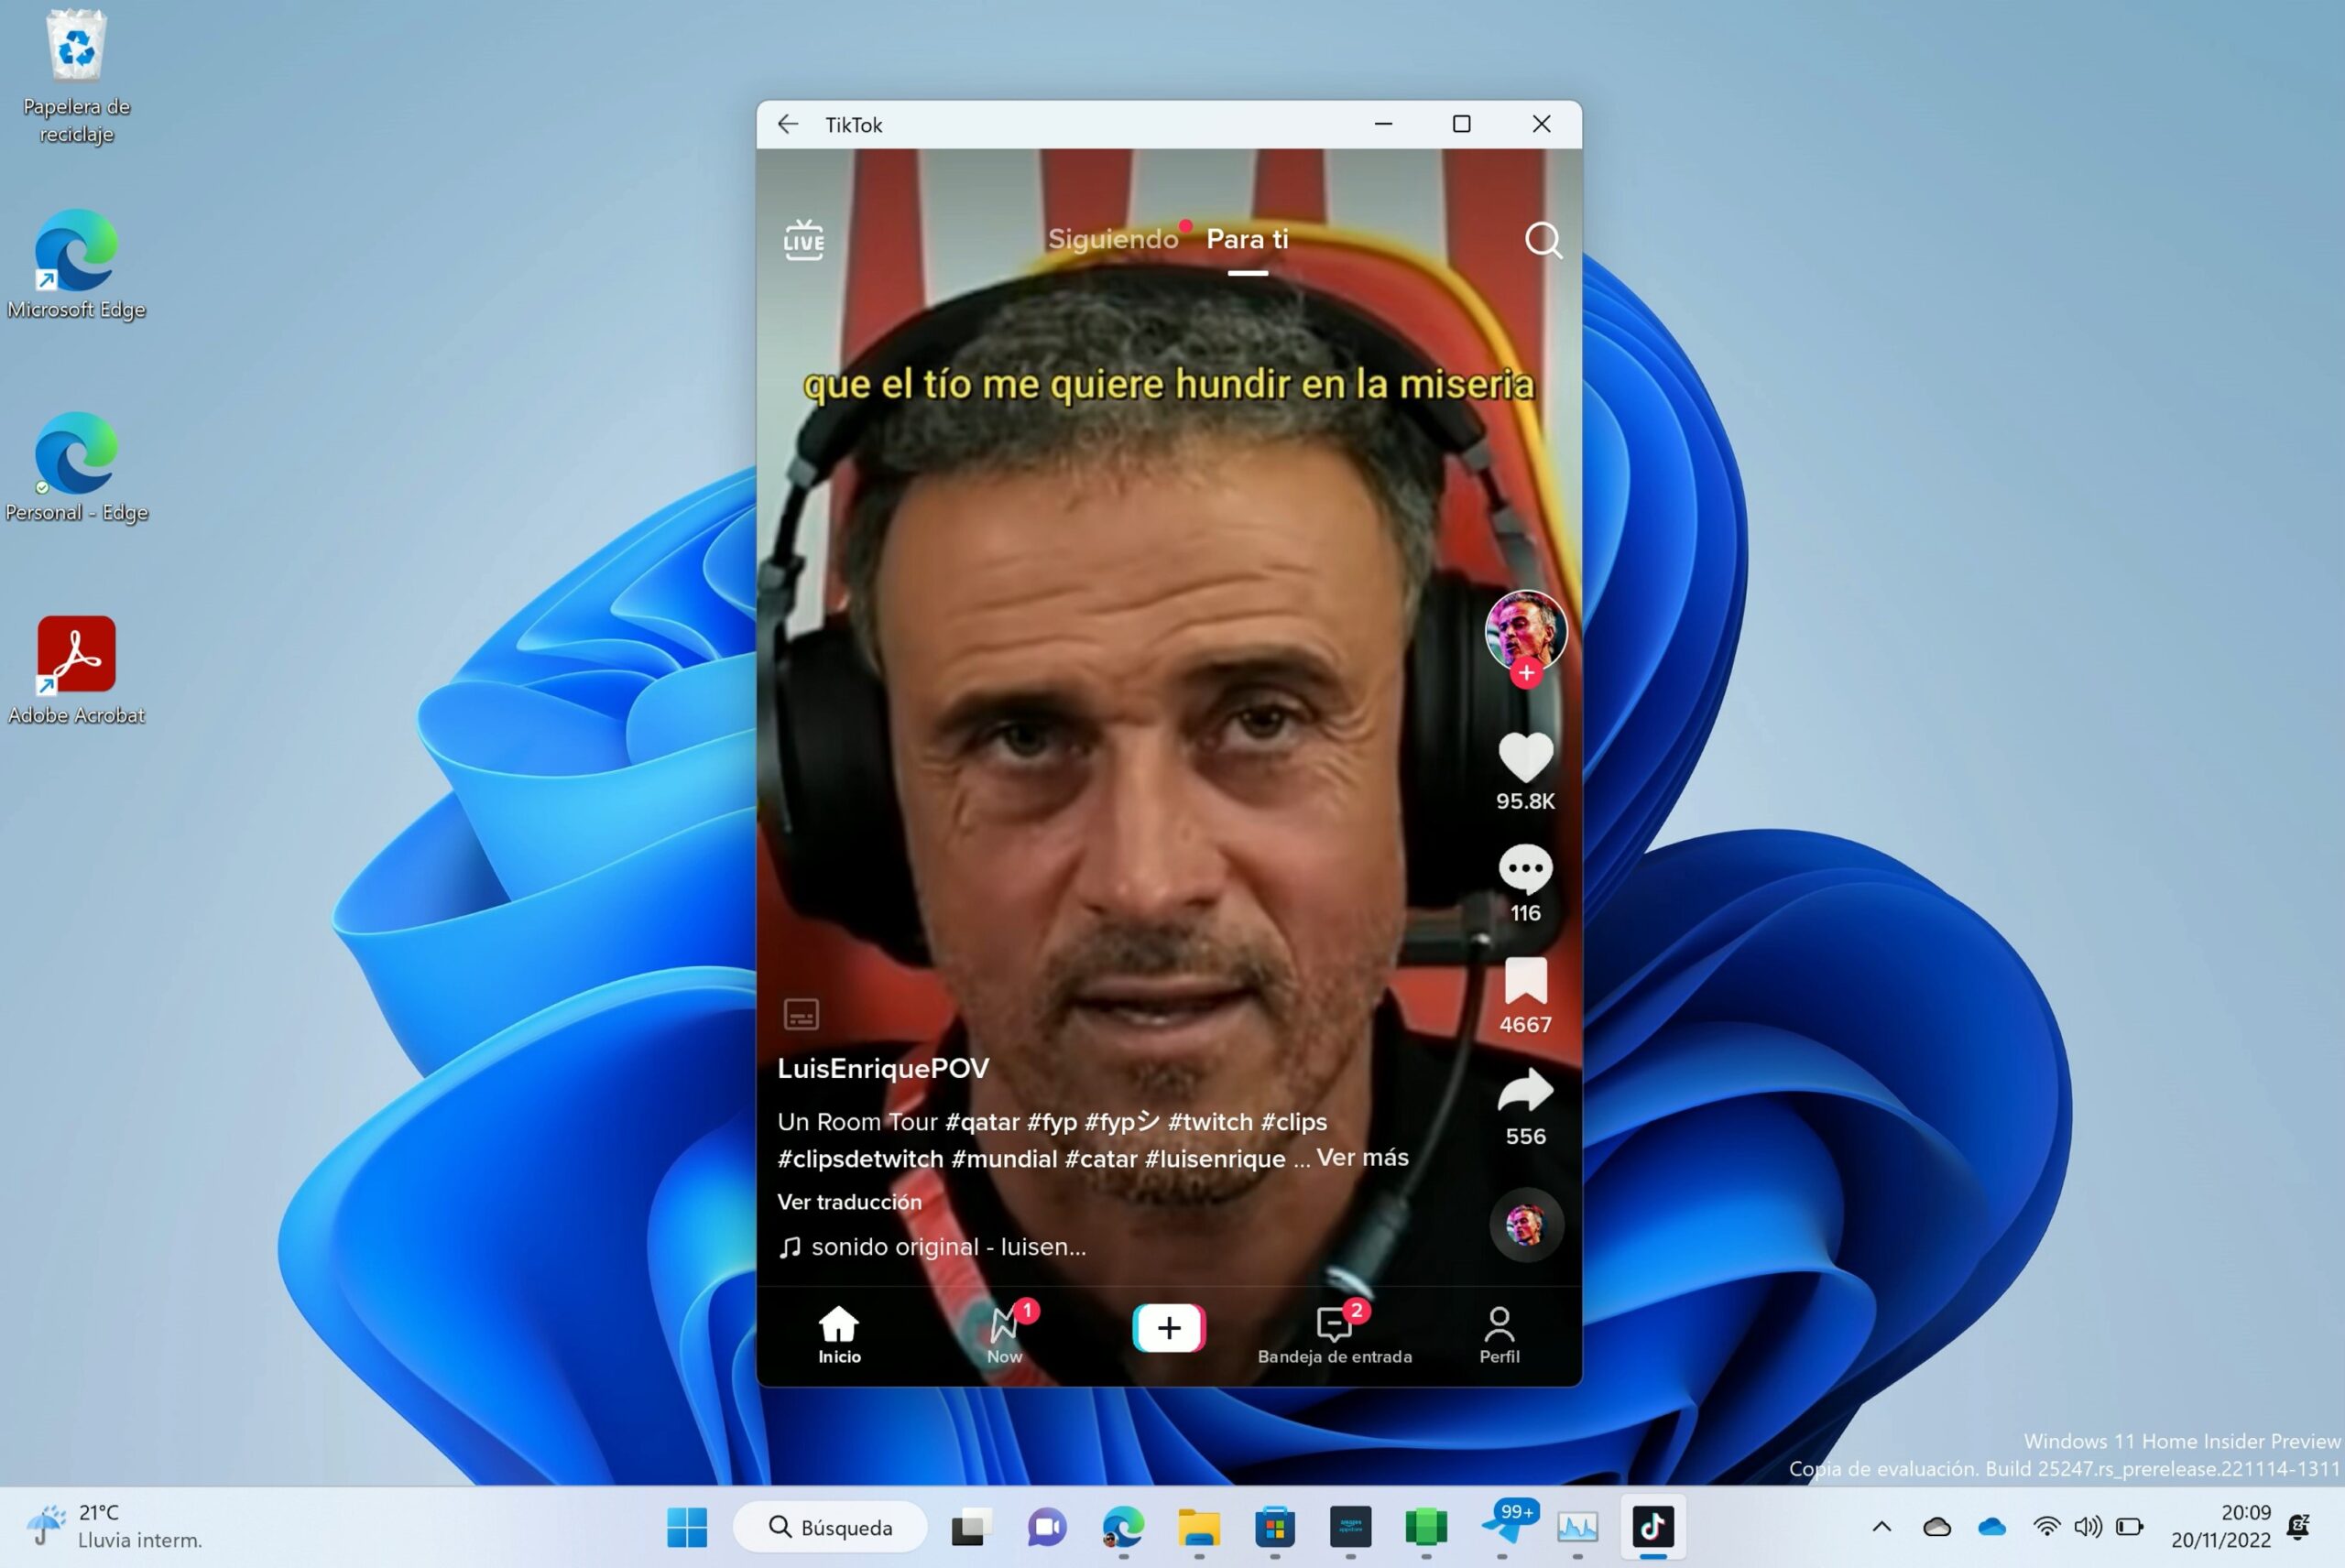 Captura de la aplicación TikTok de Android ejecutándose sobre Windows 11